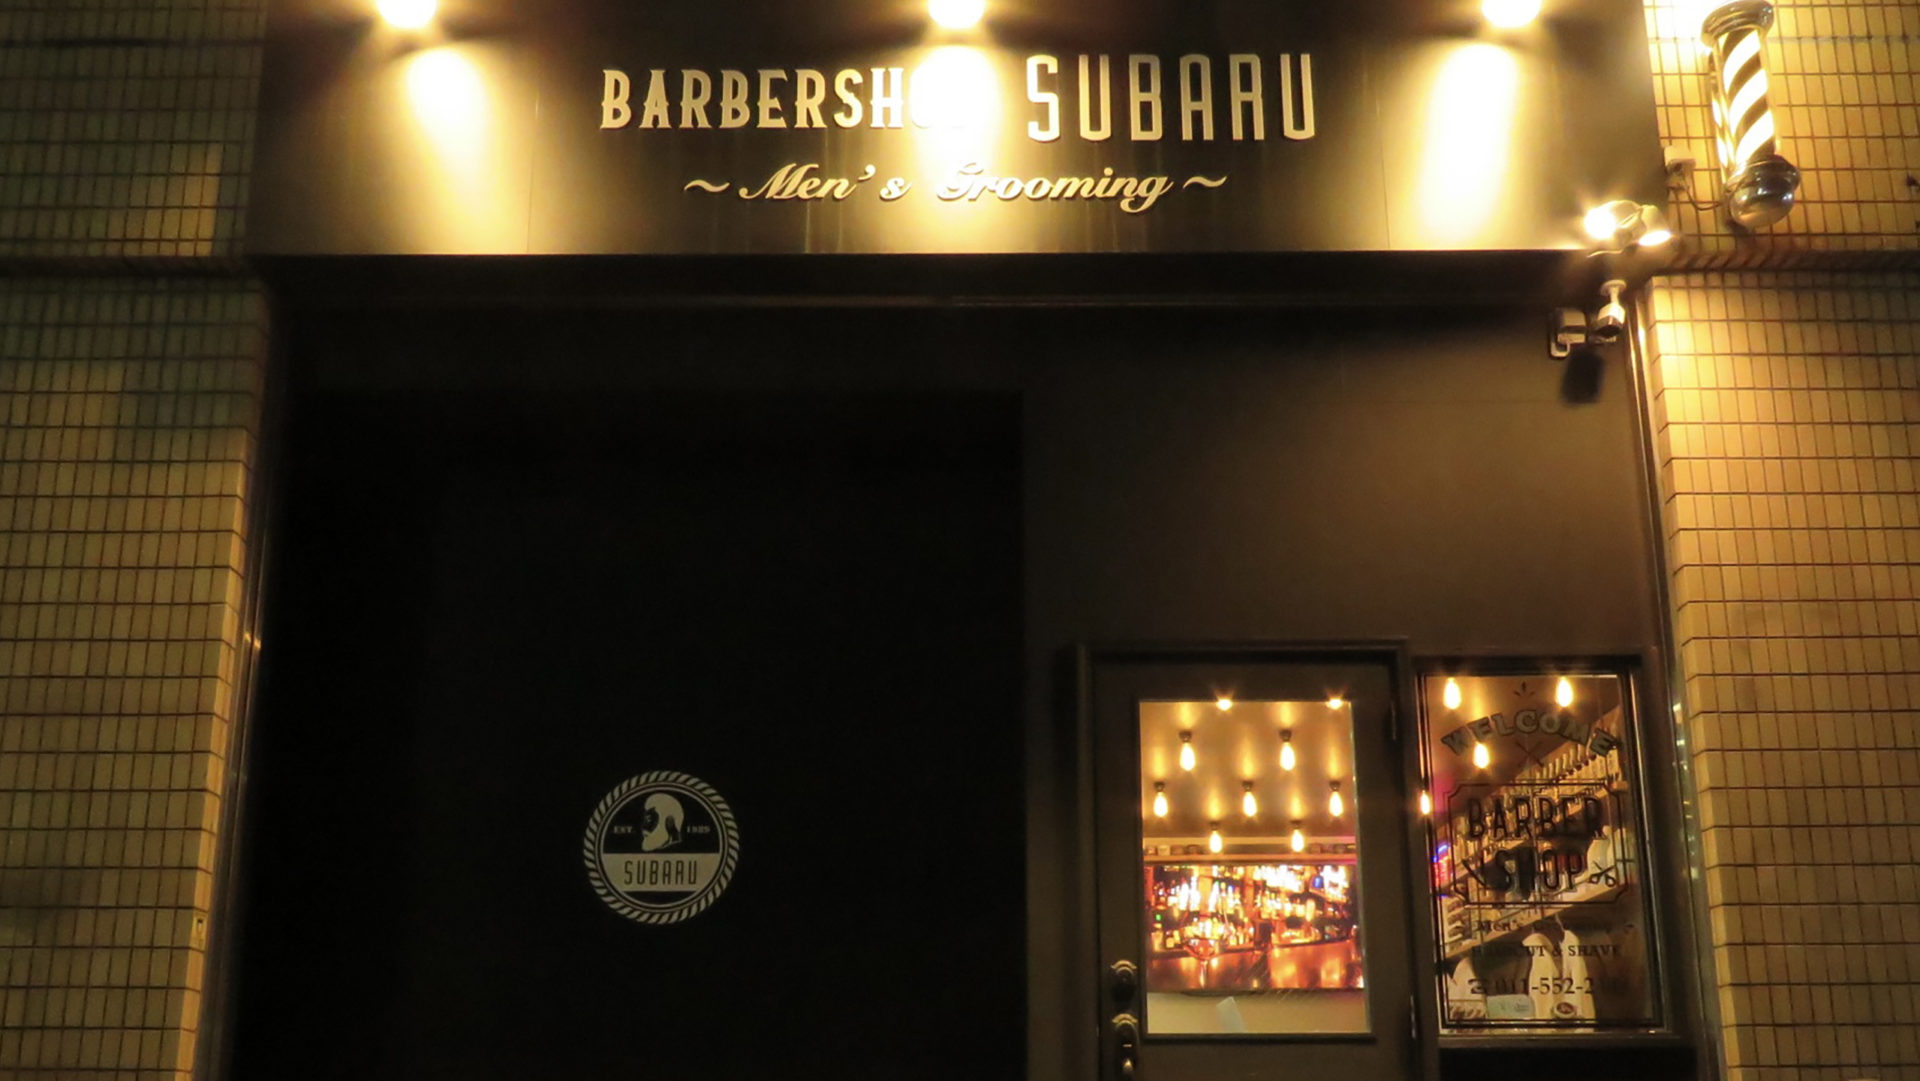 BARBERSHOP SUBARU-Men's Grooming-